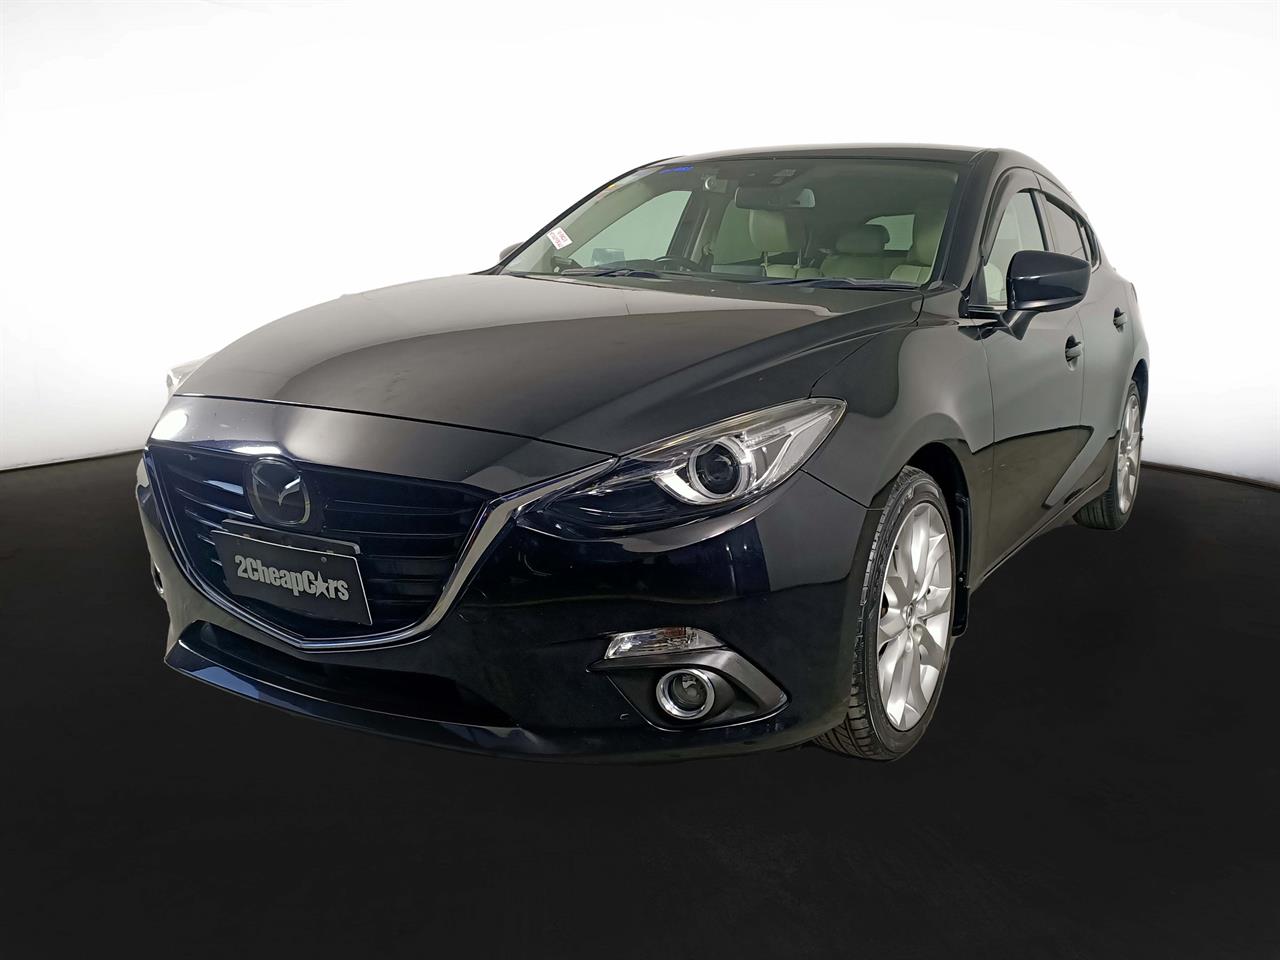 2013 Mazda Axela 3 Late Shape 2.0